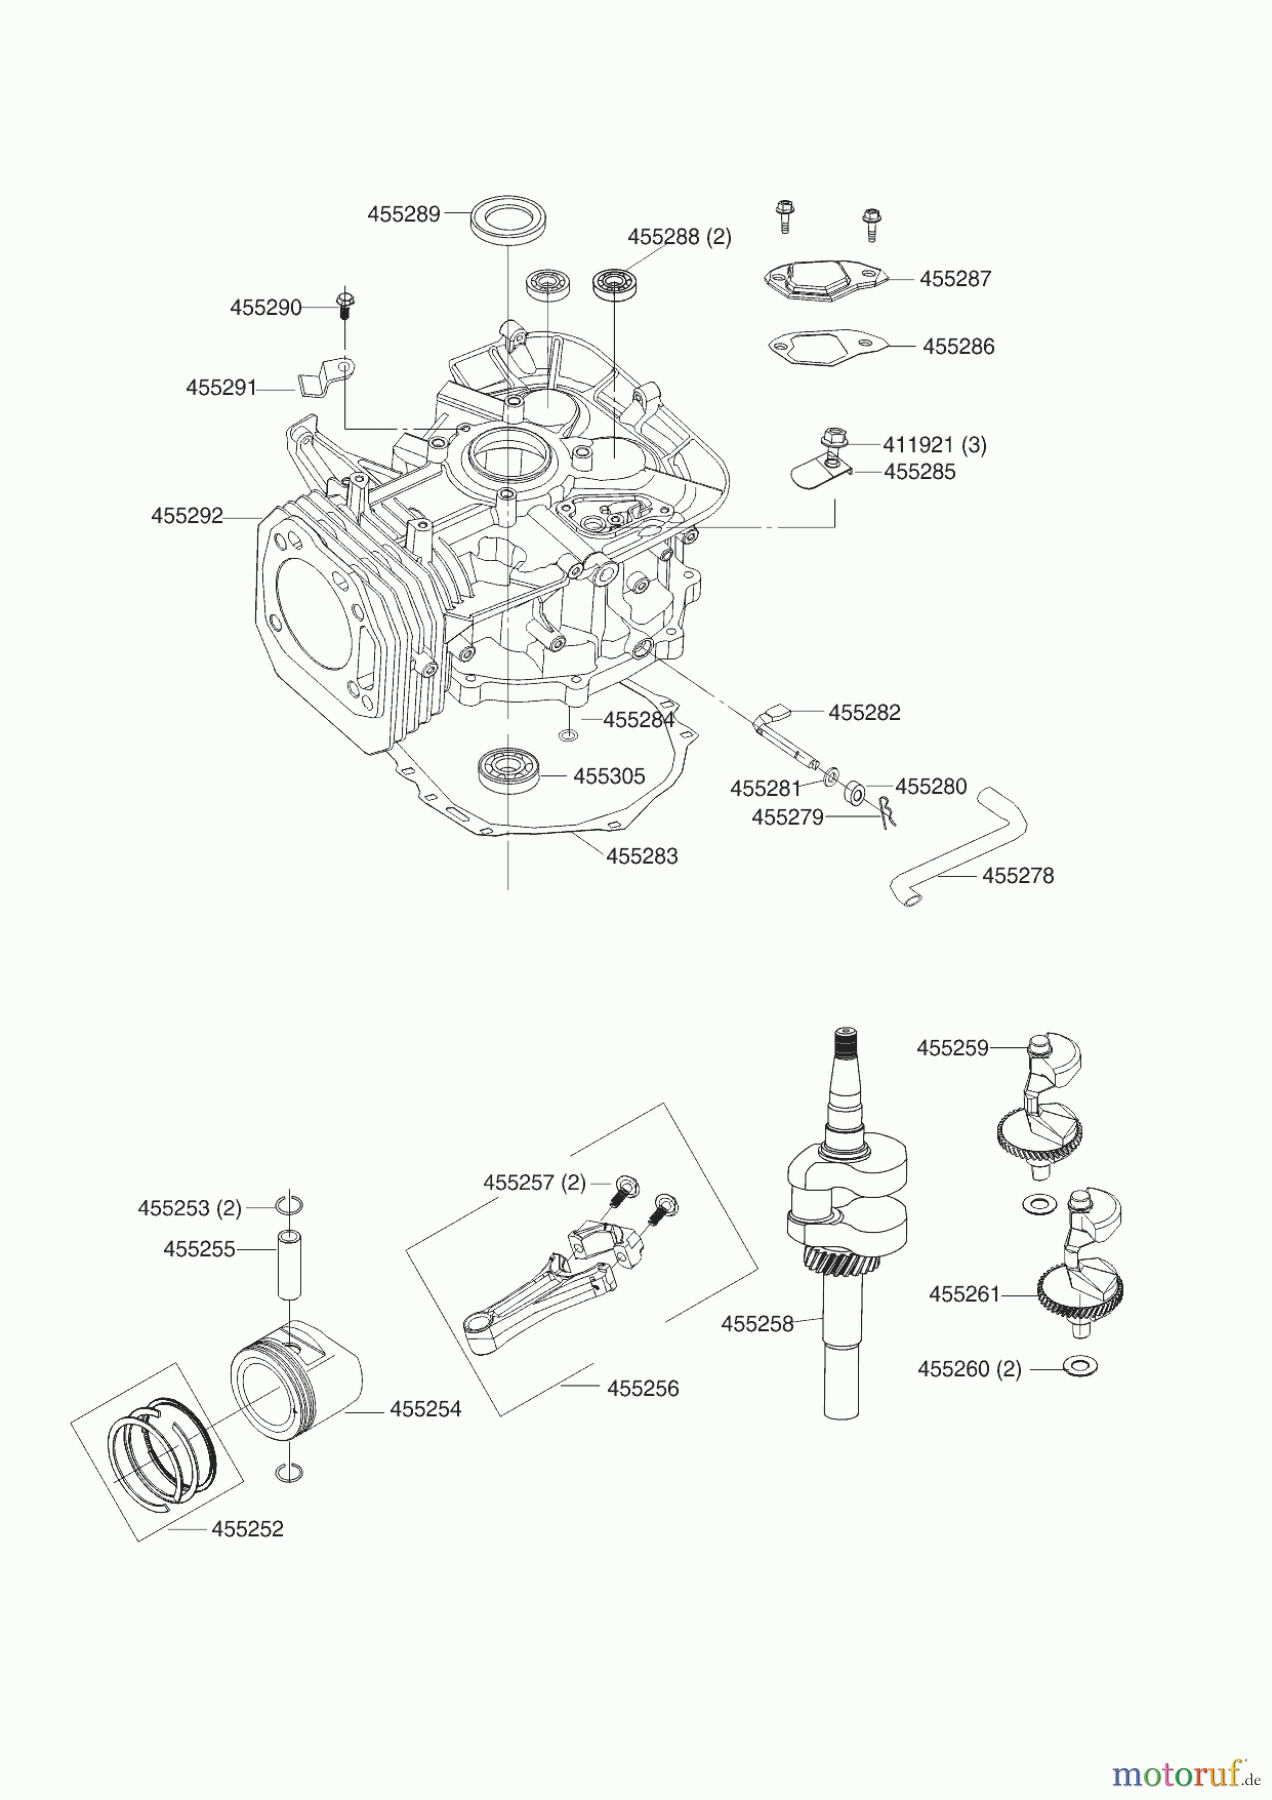  AL-KO Gartentechnik Benzinmotoren B-MOTOR PRO 450 LC1P92F-1 R9005  01/2013 Seite 2